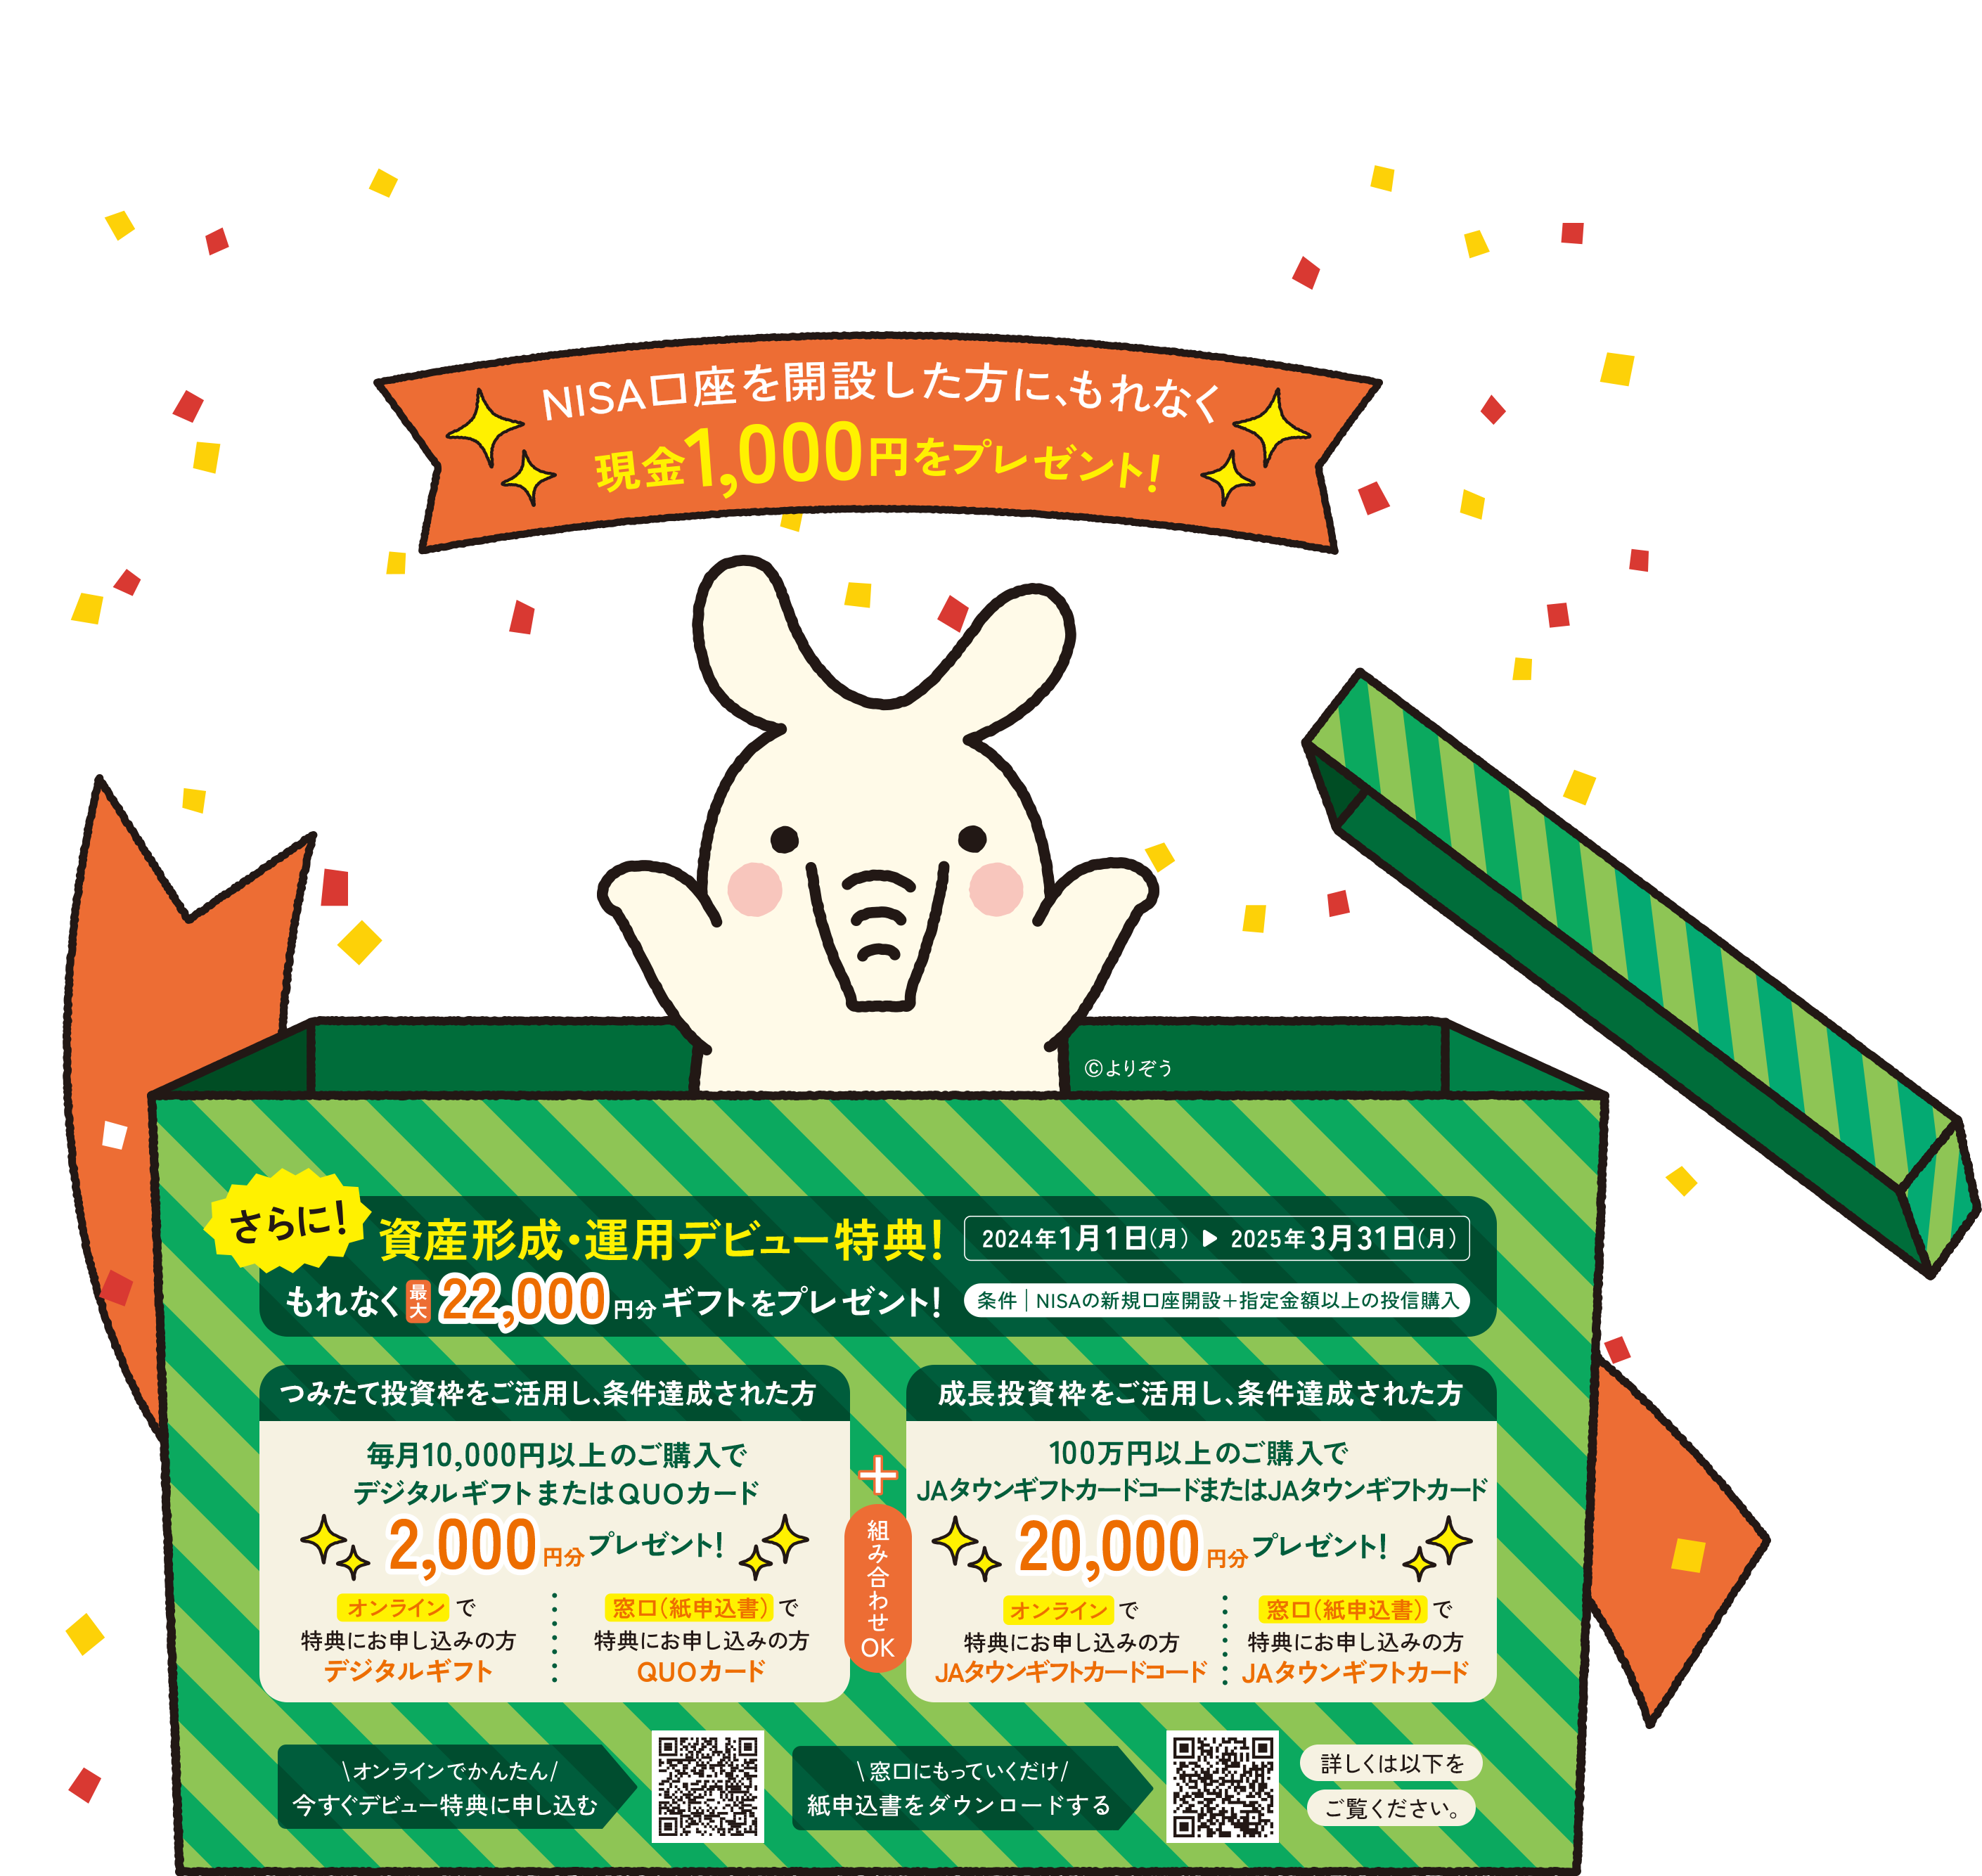 一般NISA口座またはつみたてNISA口座を開設した方に現金1000円をプレゼント みんなの未来を応援するぞう！ ©よりぞう